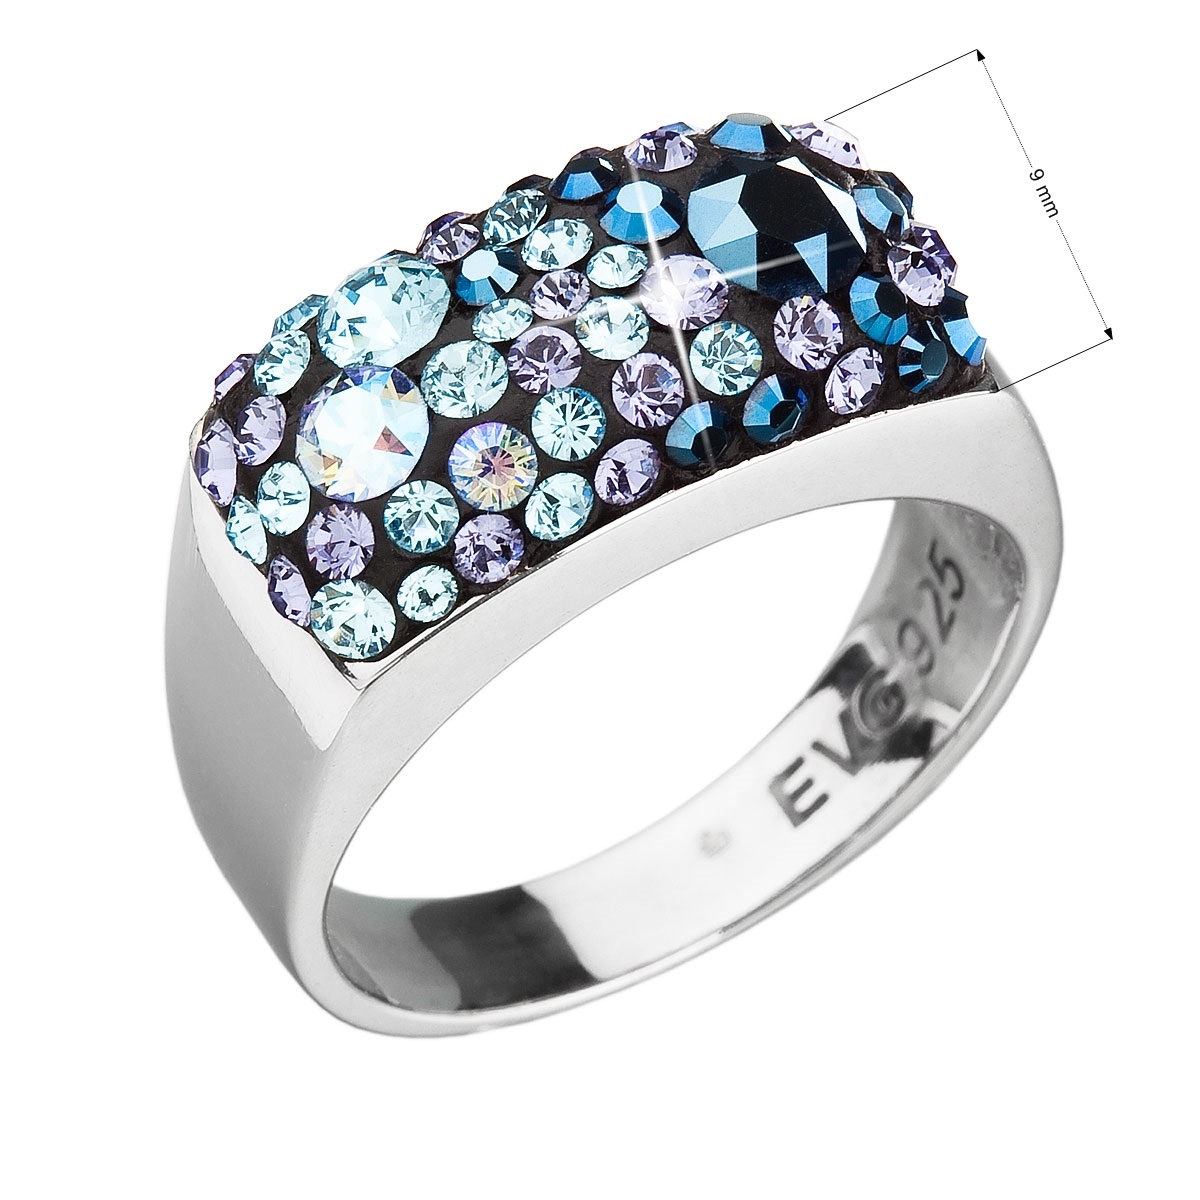 Strieborný prsteň s kameňmi Crystals from Swarovski ® Blue Style